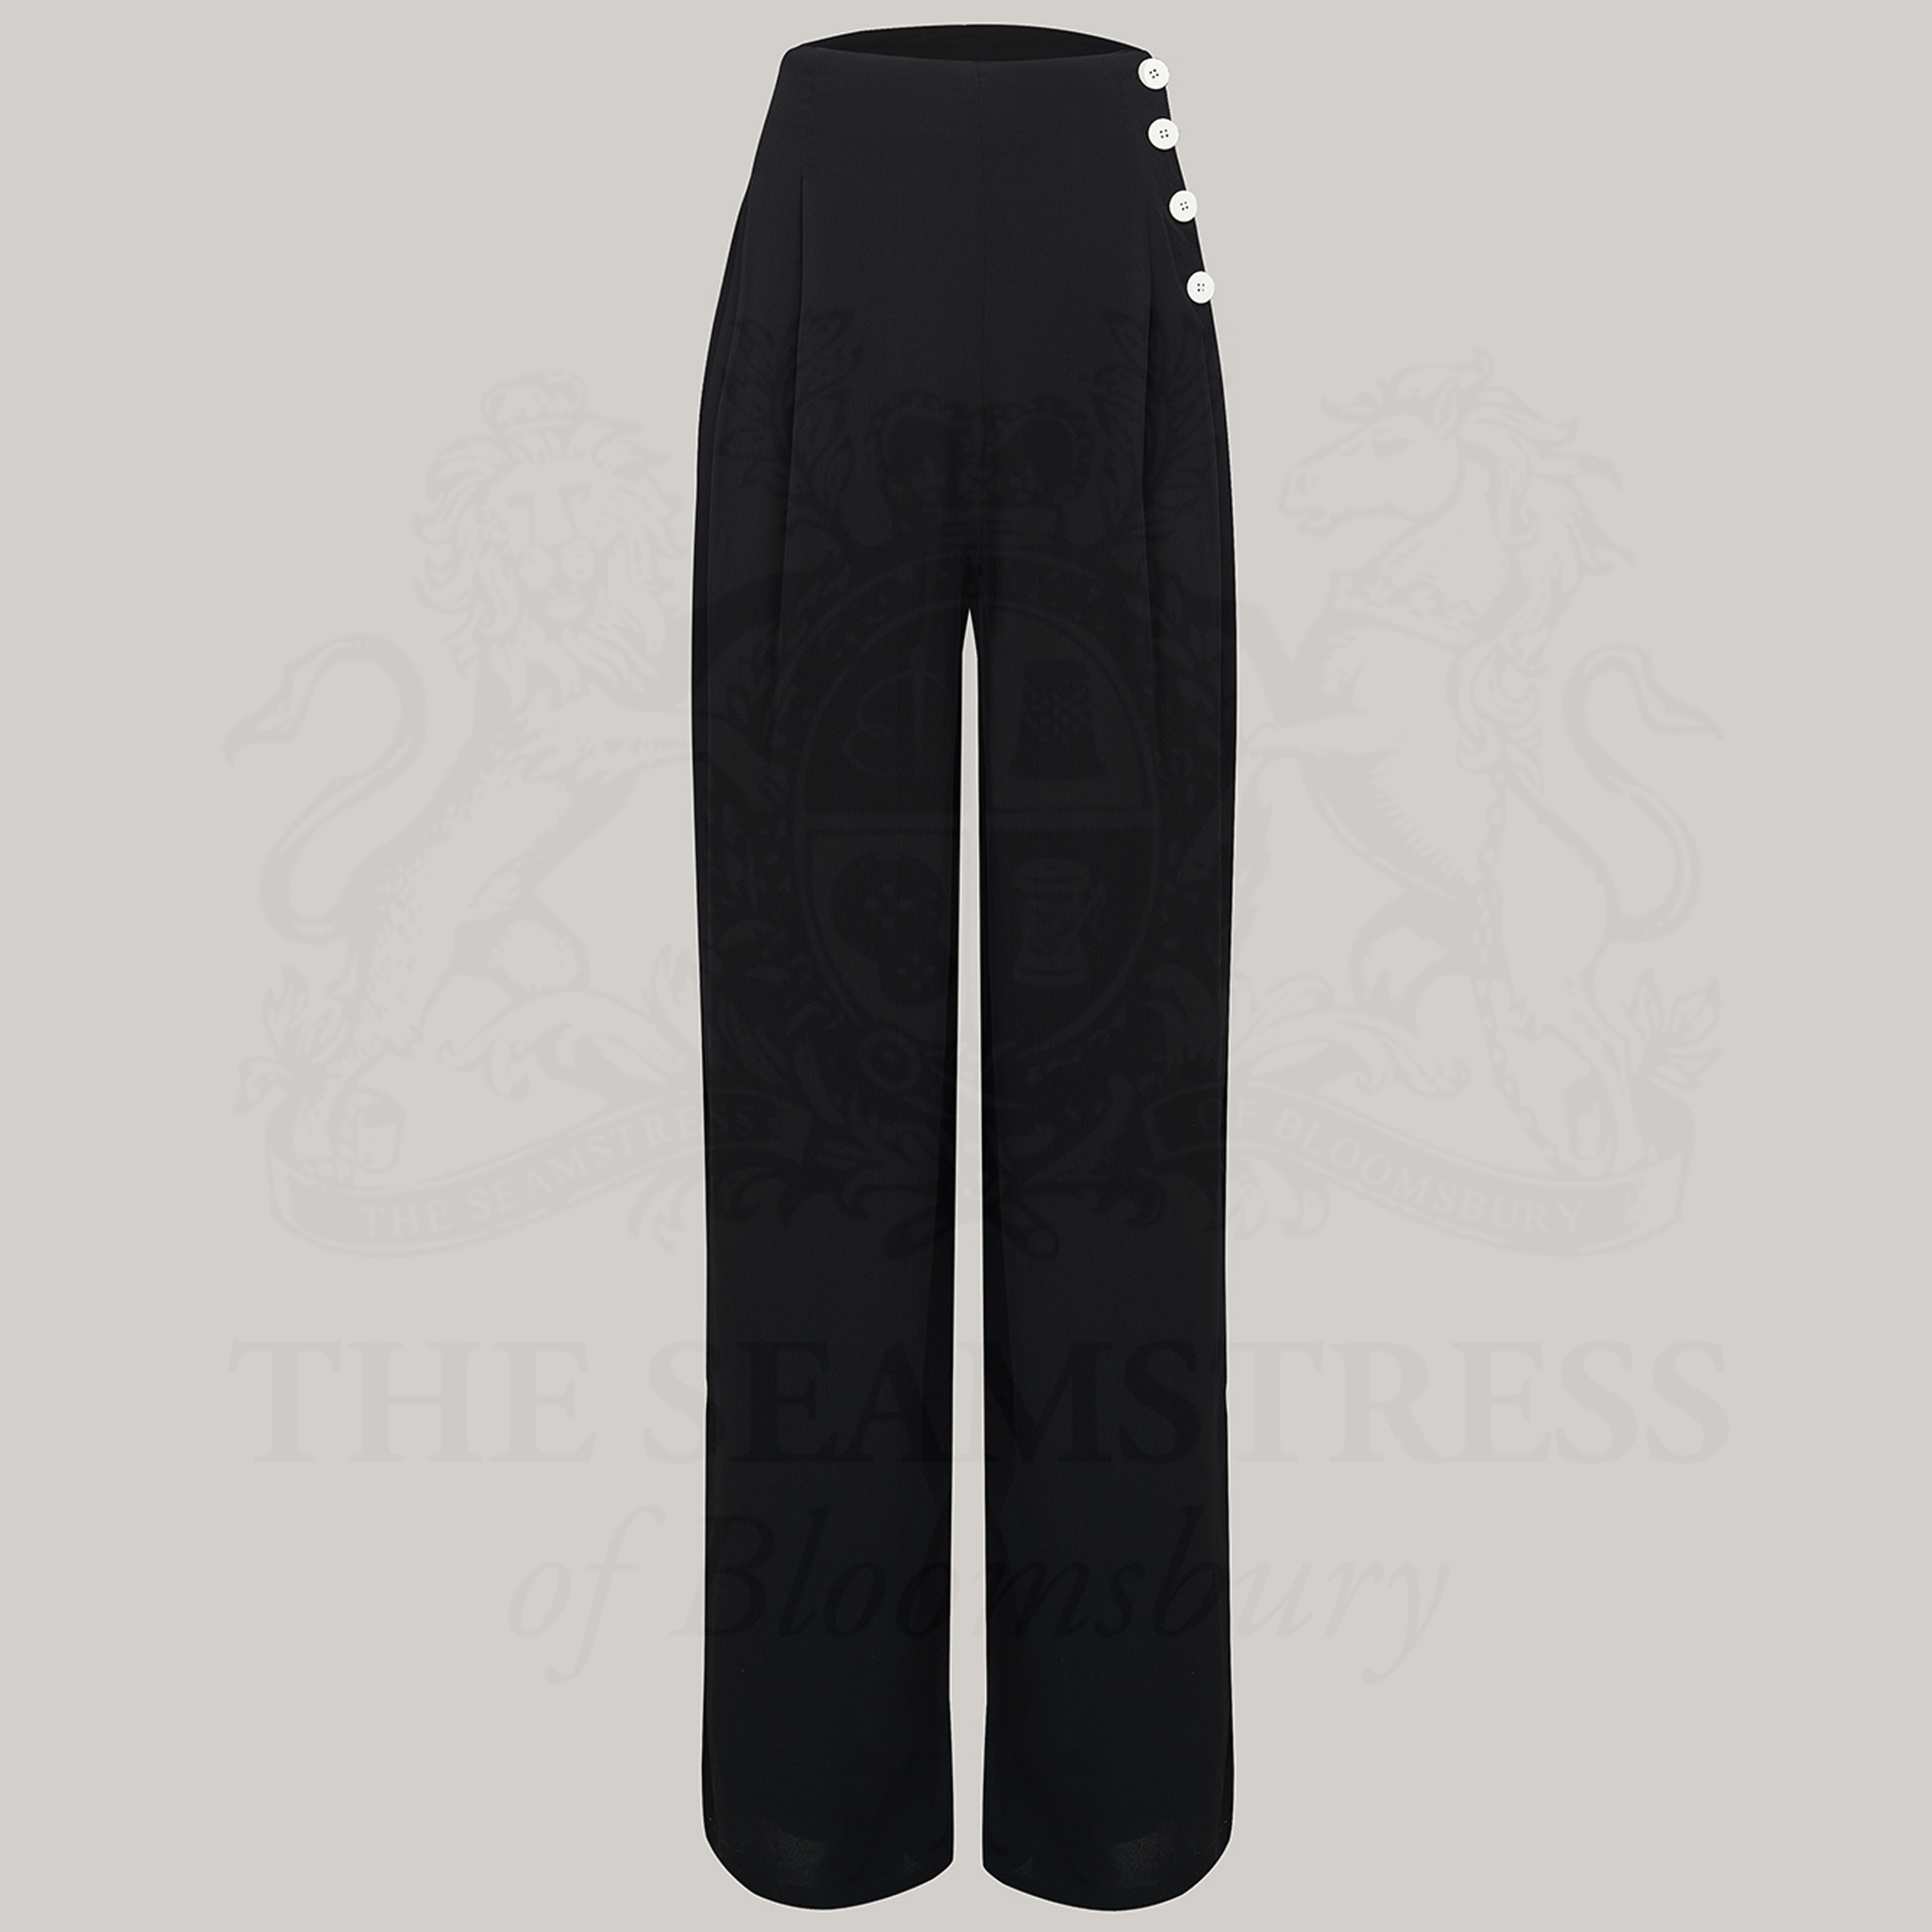 Audrey Trousers Liquorice Black  Vintage Style Women's Trousers